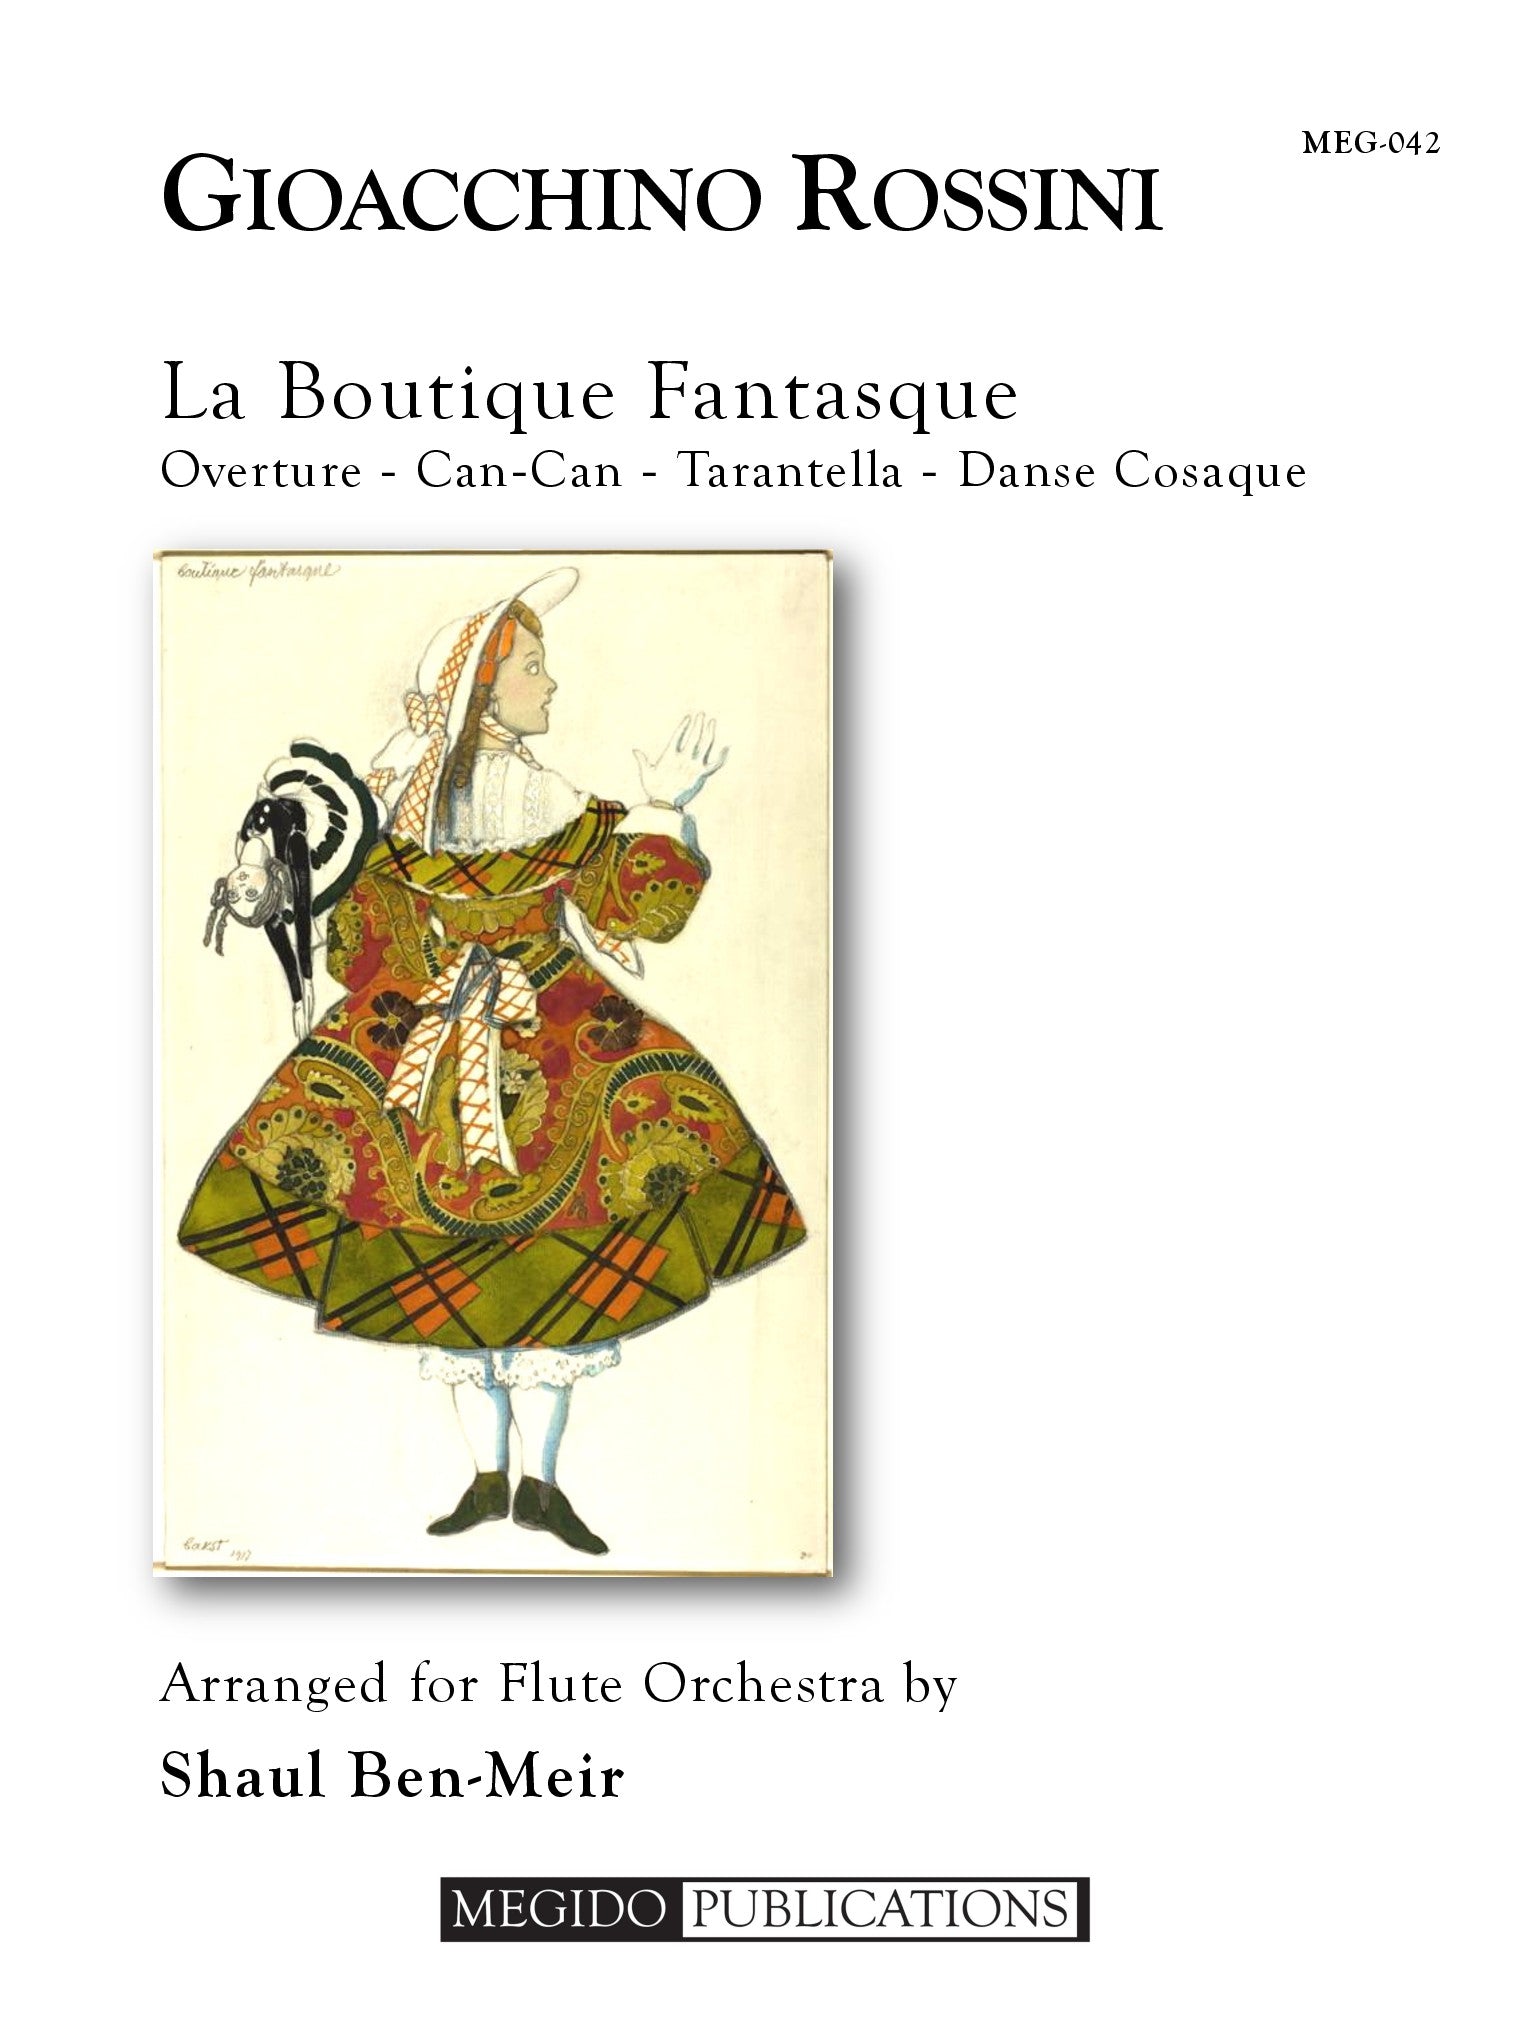 風変わりな店（ジョアキーノ・ロッシーニ）（フルート十一重奏）【La Boutique Fantasque】